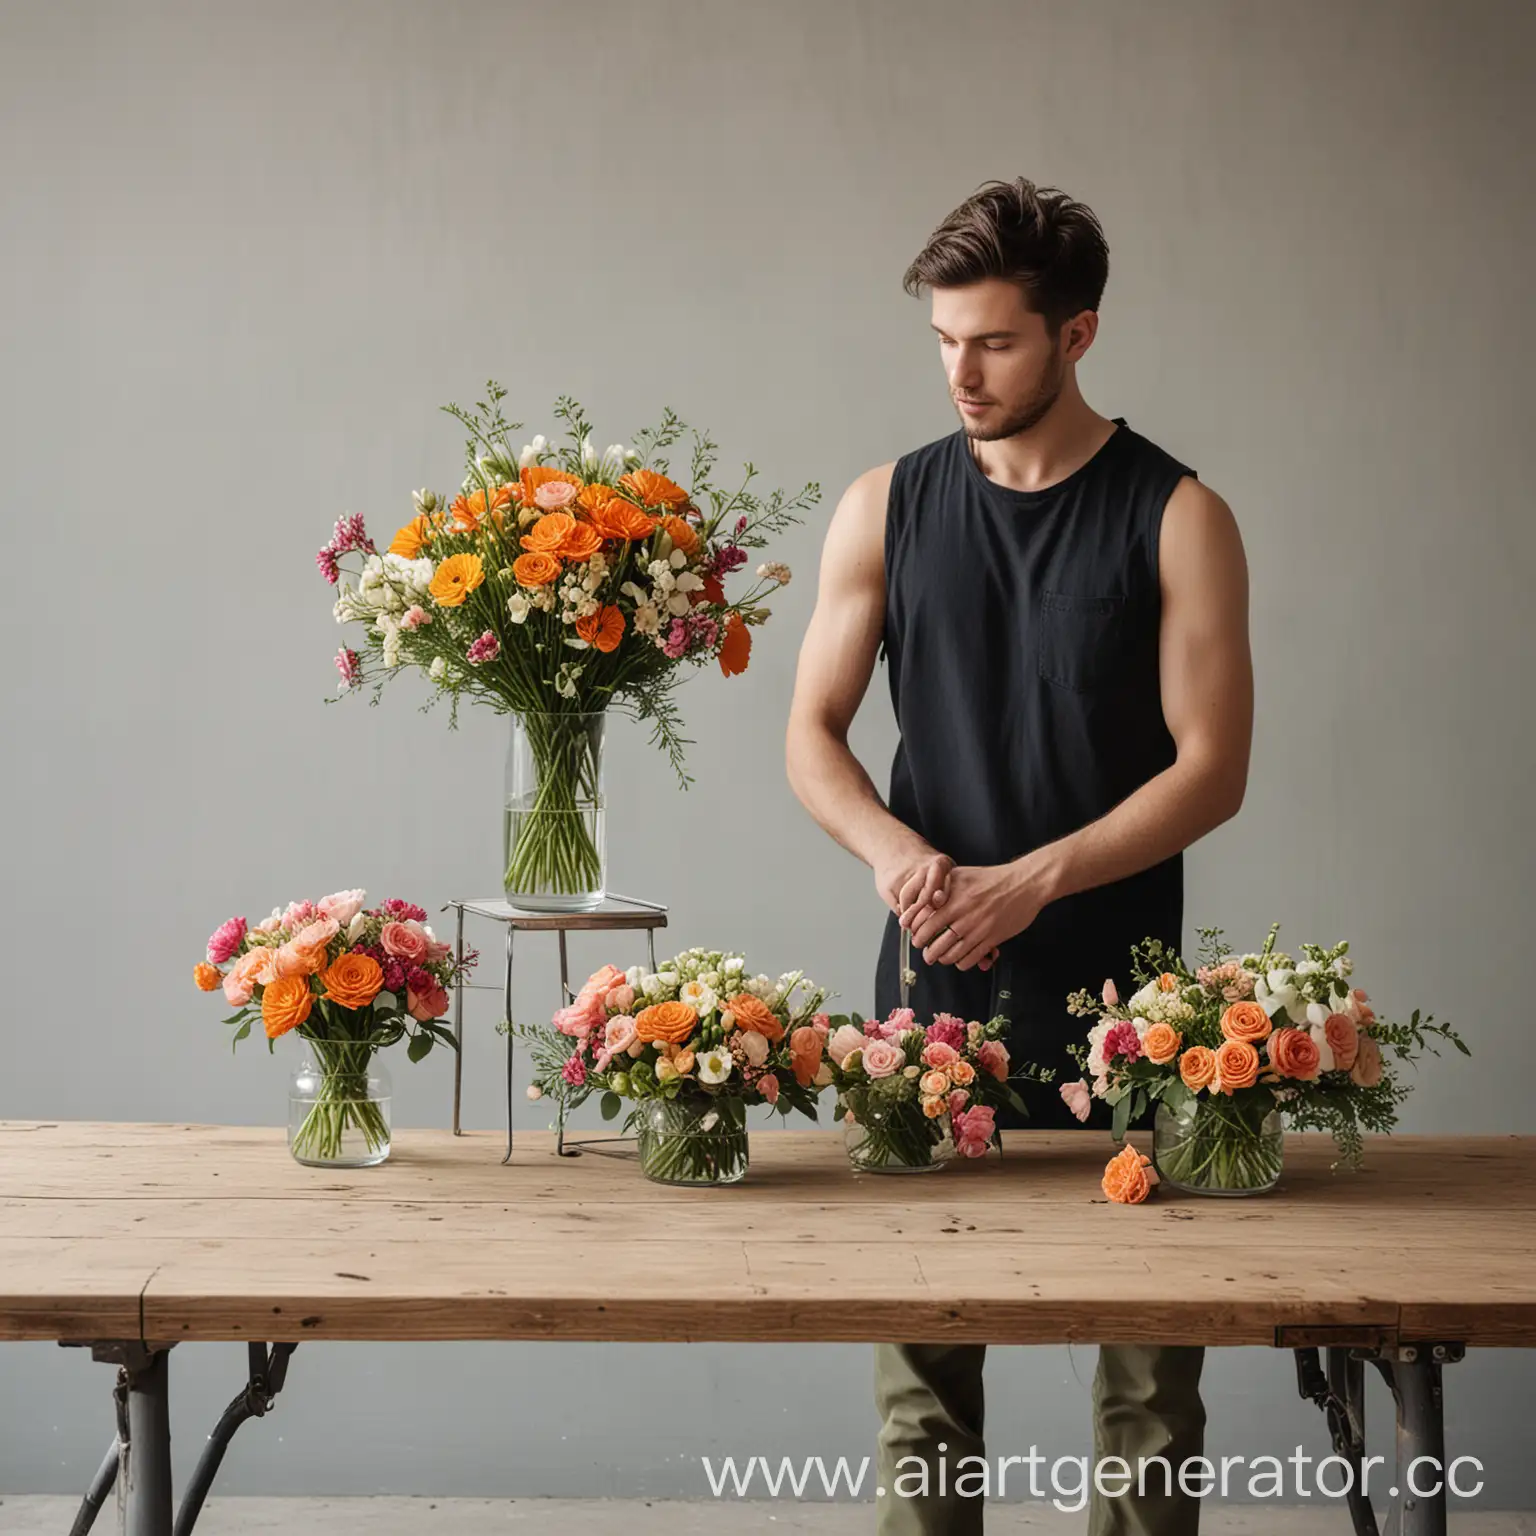 минималистичное изображение услуги "букеты и композиции" для салона флористики. должен быть изображен флорист собирающий букет за флористическим столом. вокруг него стоят баки с цветами